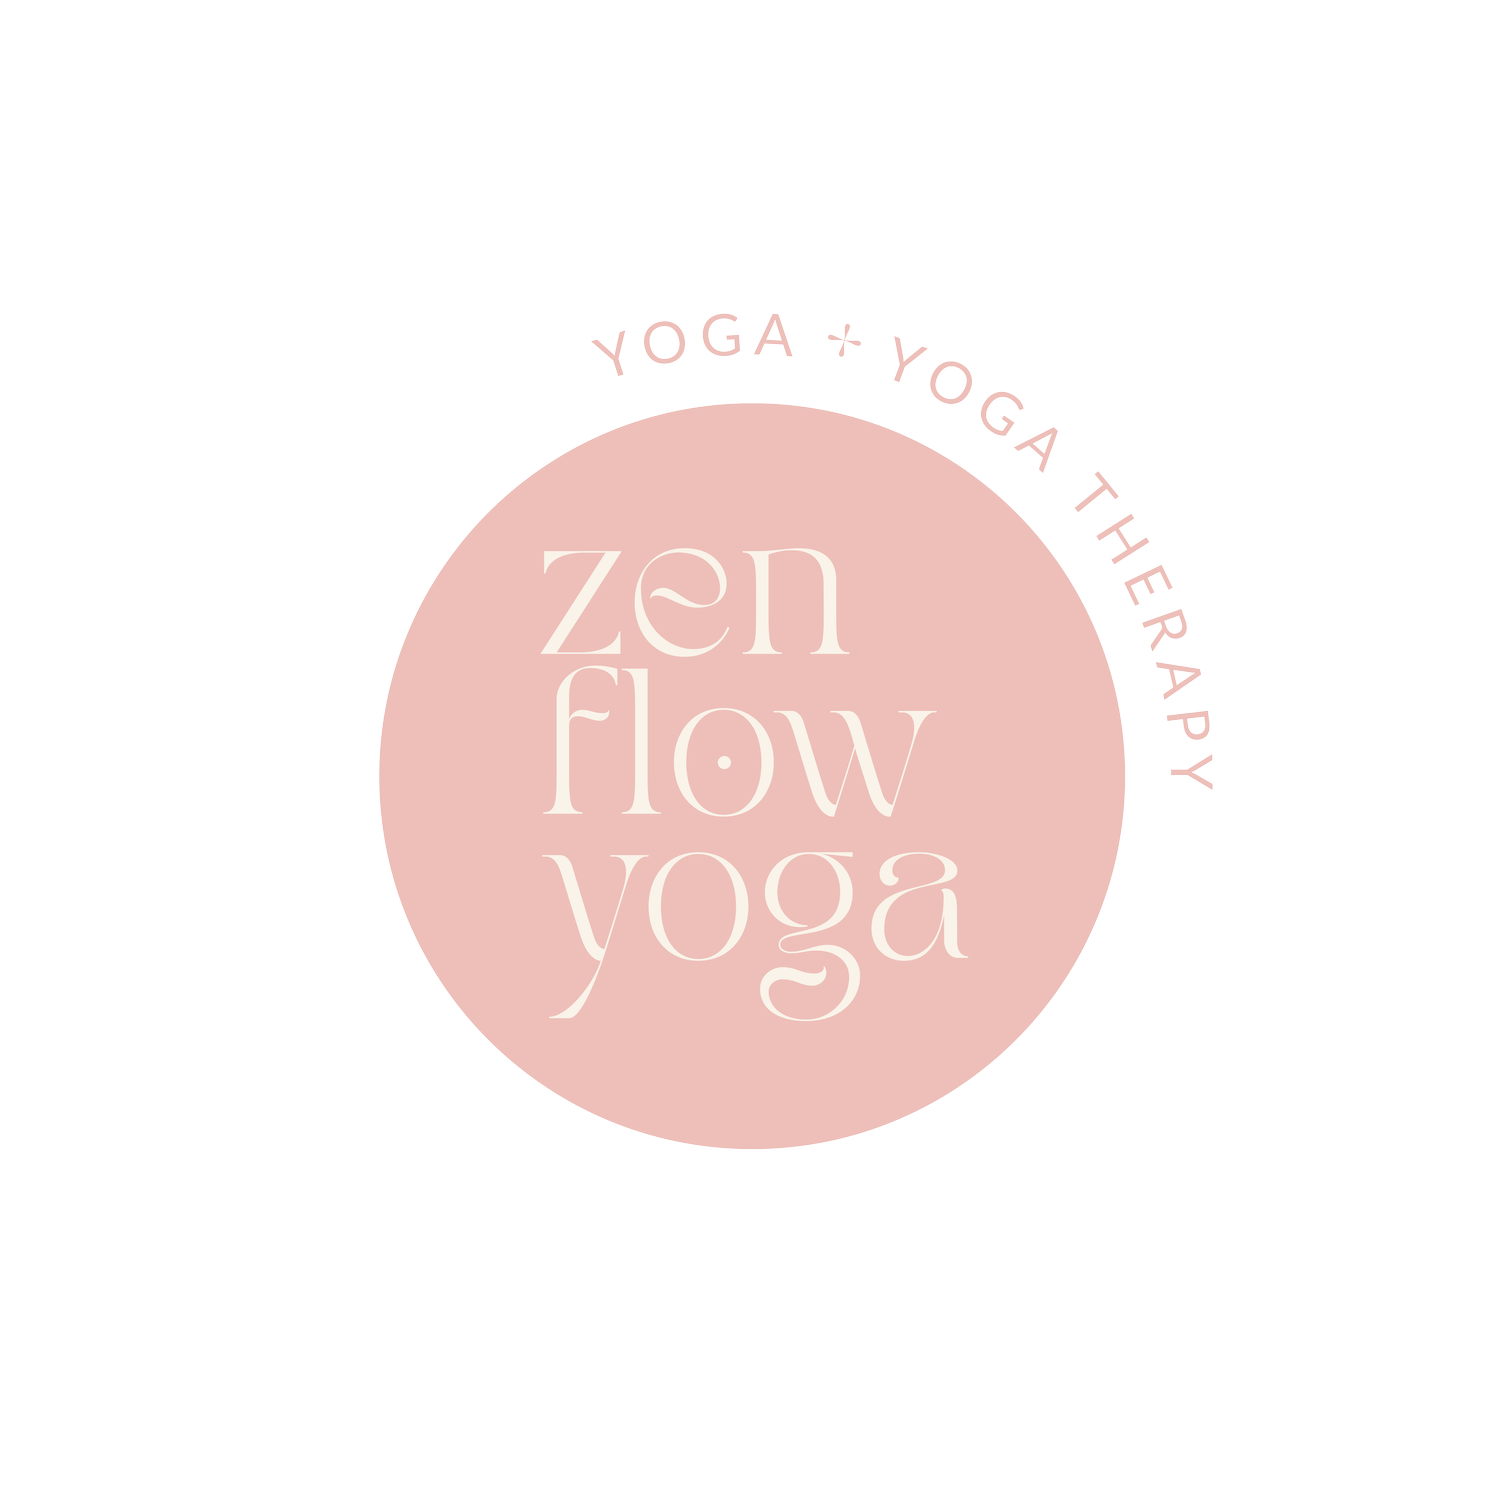 Zen Flow Yoga